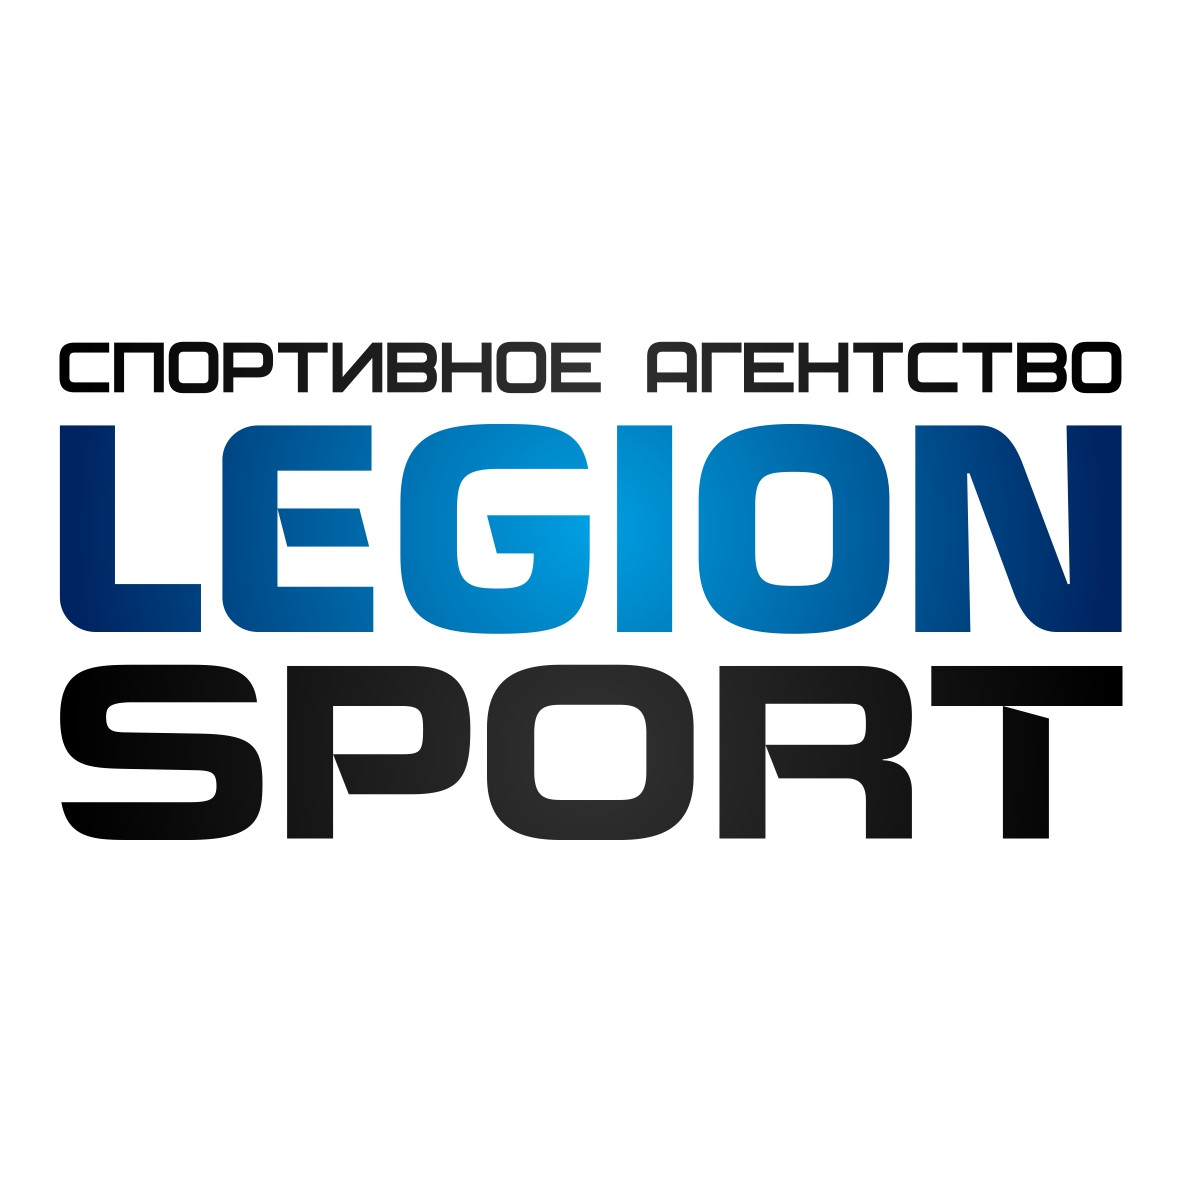 Логотип Легион Спорт.jpg